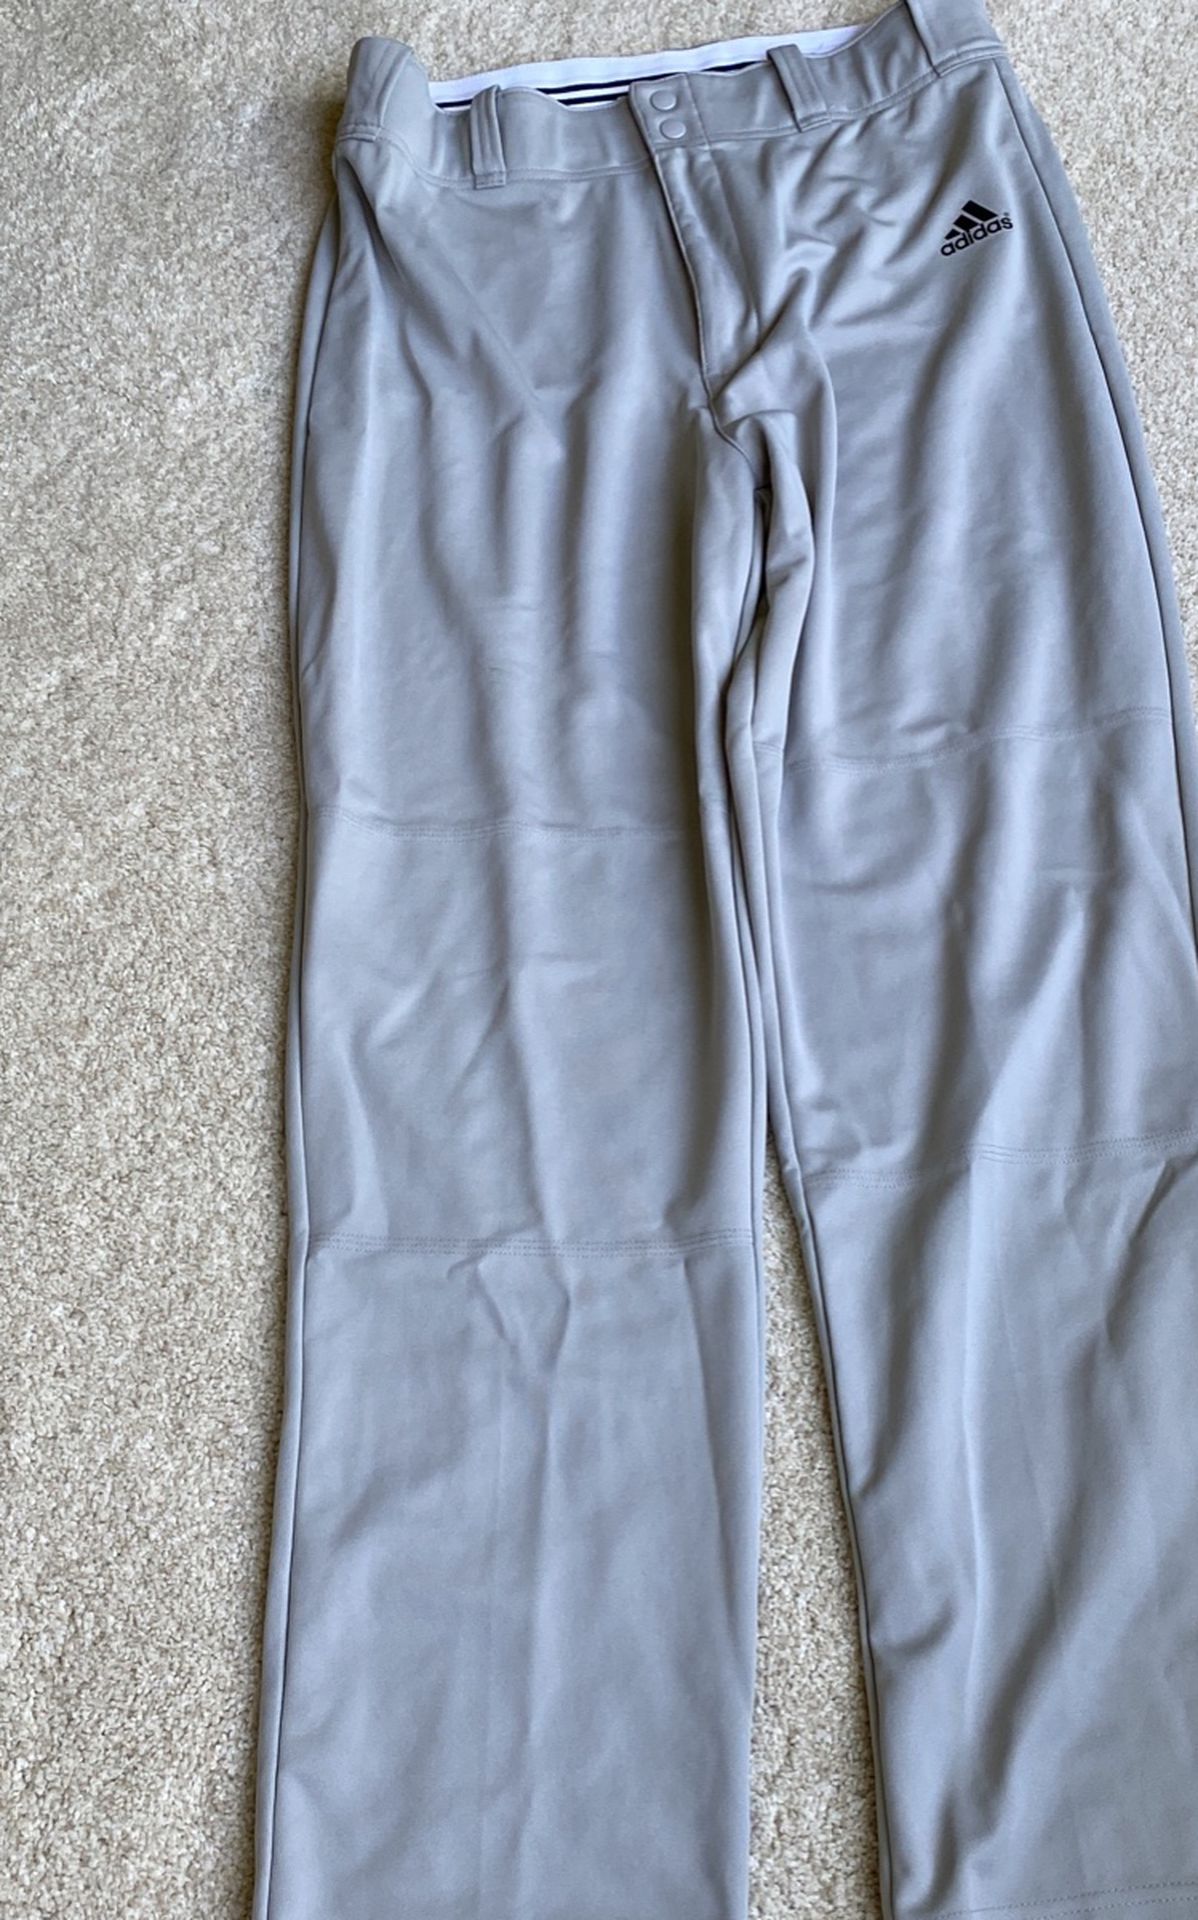 Adidas Climalite gray Baseball Pants  Adult large